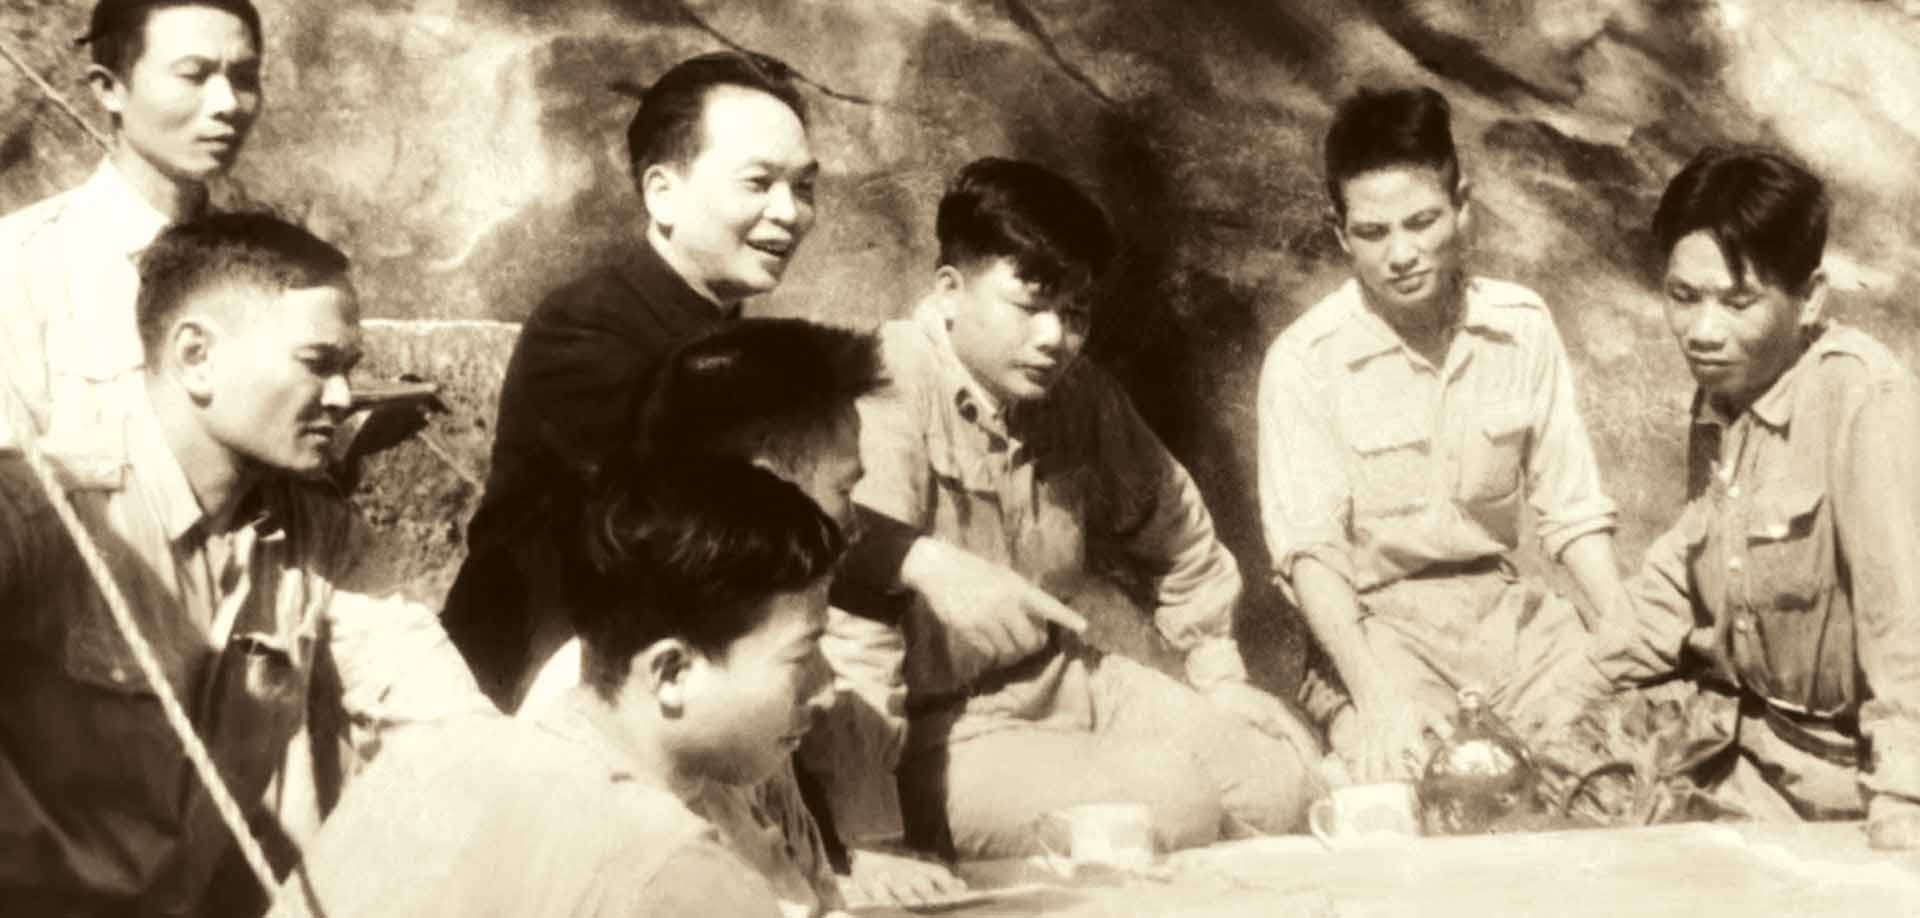 Đại tướng Võ Nguyên Giáp với chiến dịch Điện Biên Phủ